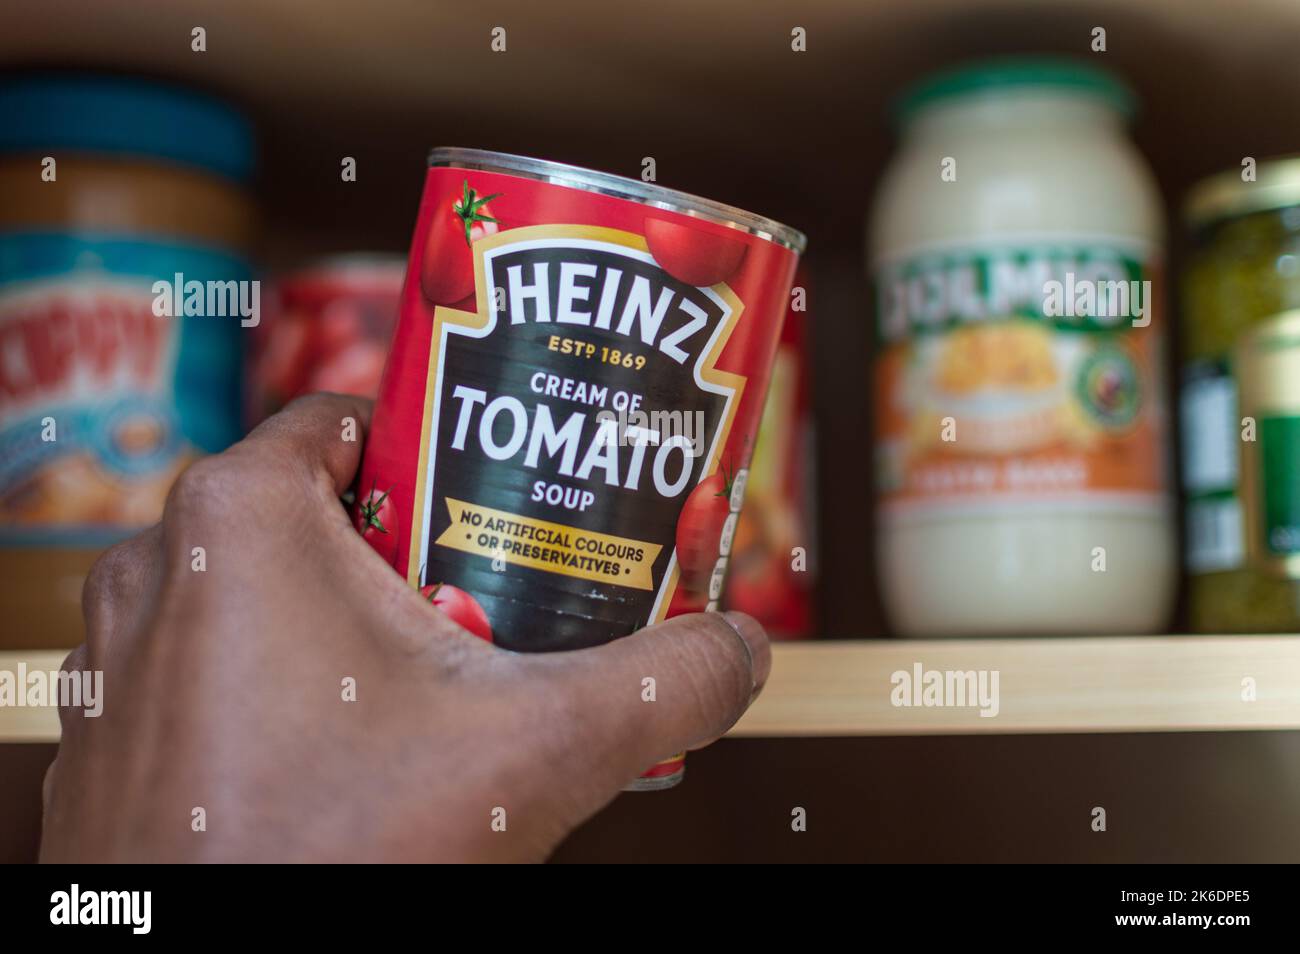 Uomo adulto che prende una lattina di zuppa di pomodoro Heinz dal credenza Foto Stock